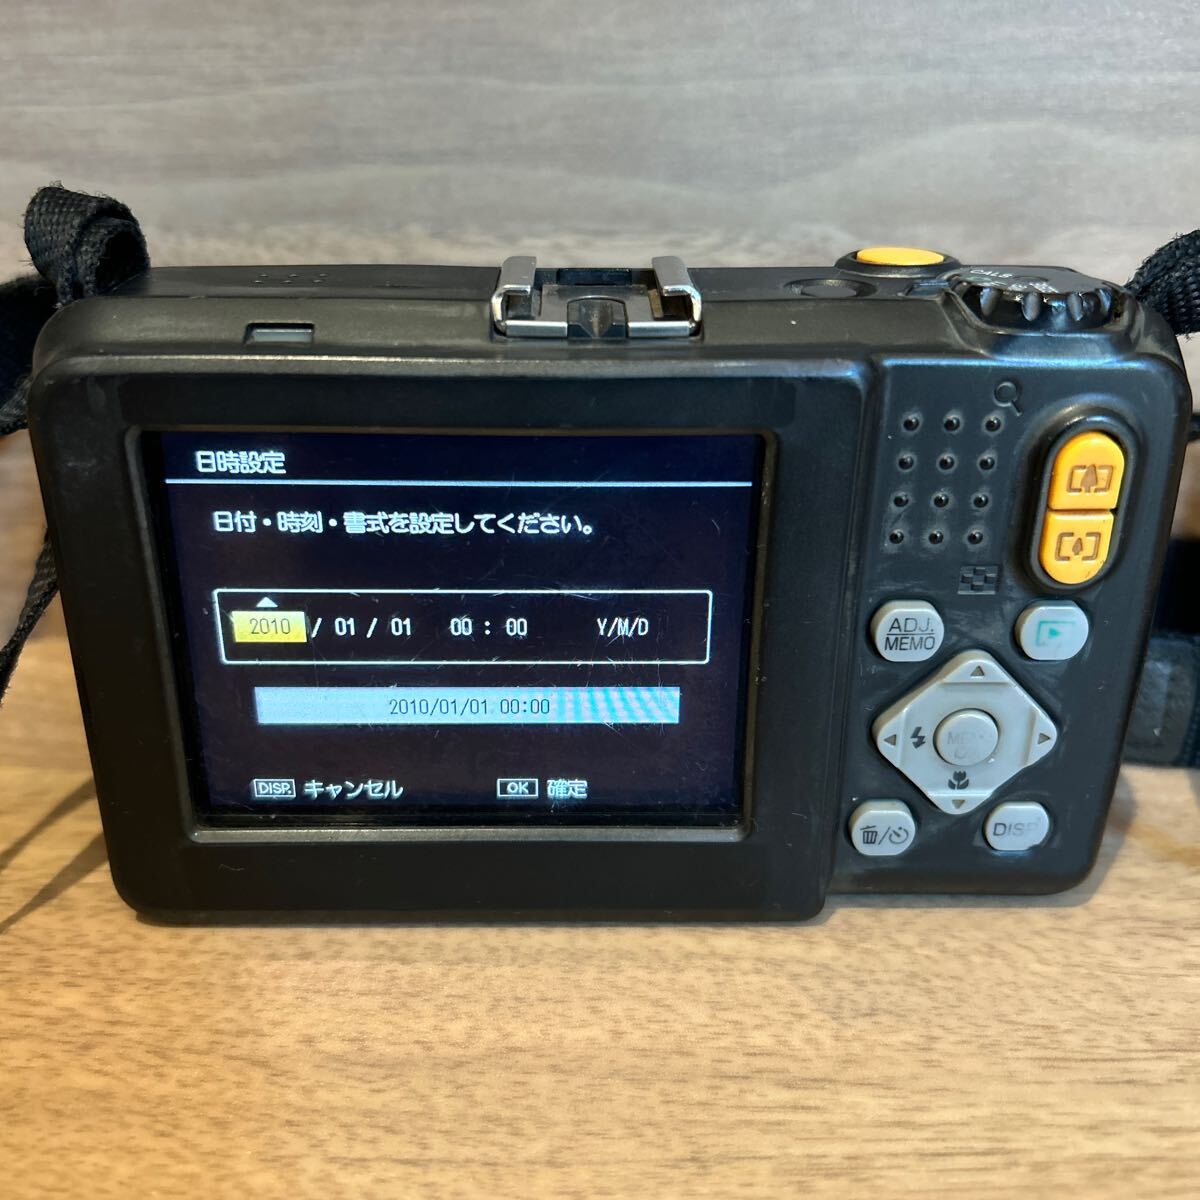 RICOH G700 Ricoh цифровая камера водонепроницаемый пыленепроницаемый для бизнеса цифровая камера 